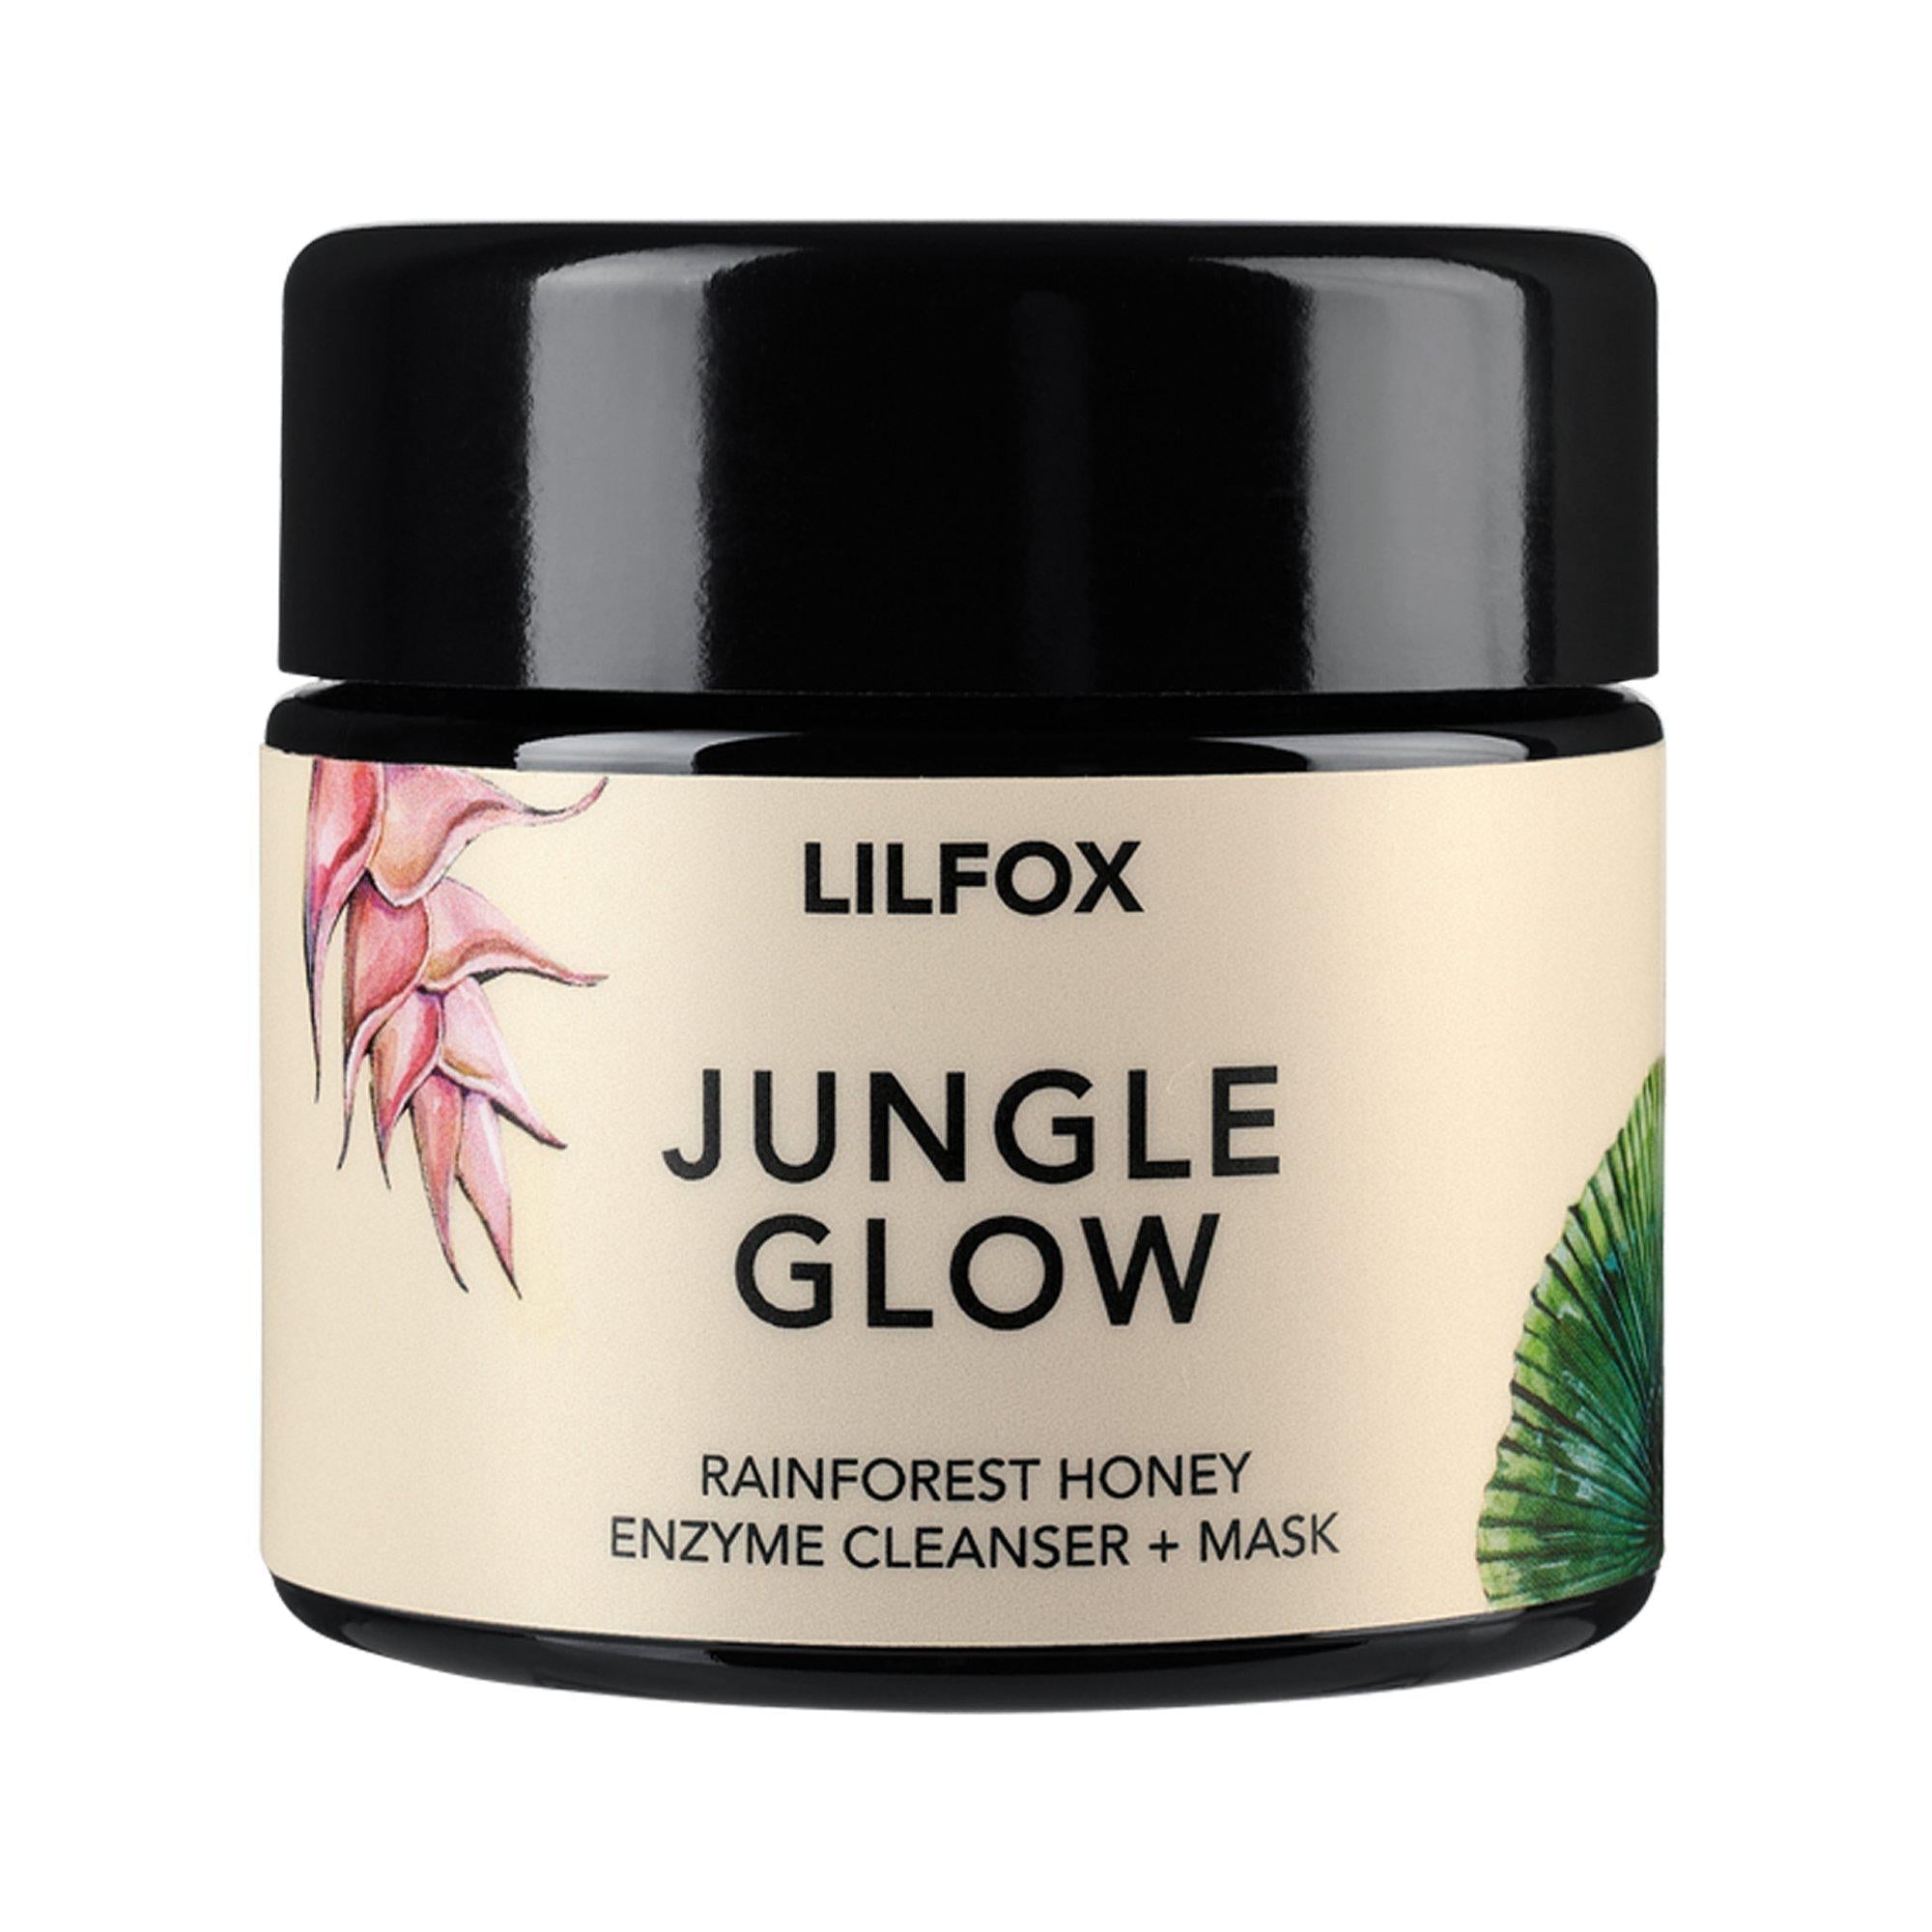 Indisponible - Jungle Glow Masque Enzymatique Nicht verfügbar – Jungle Glow Enzymatische Maske - Lilfox